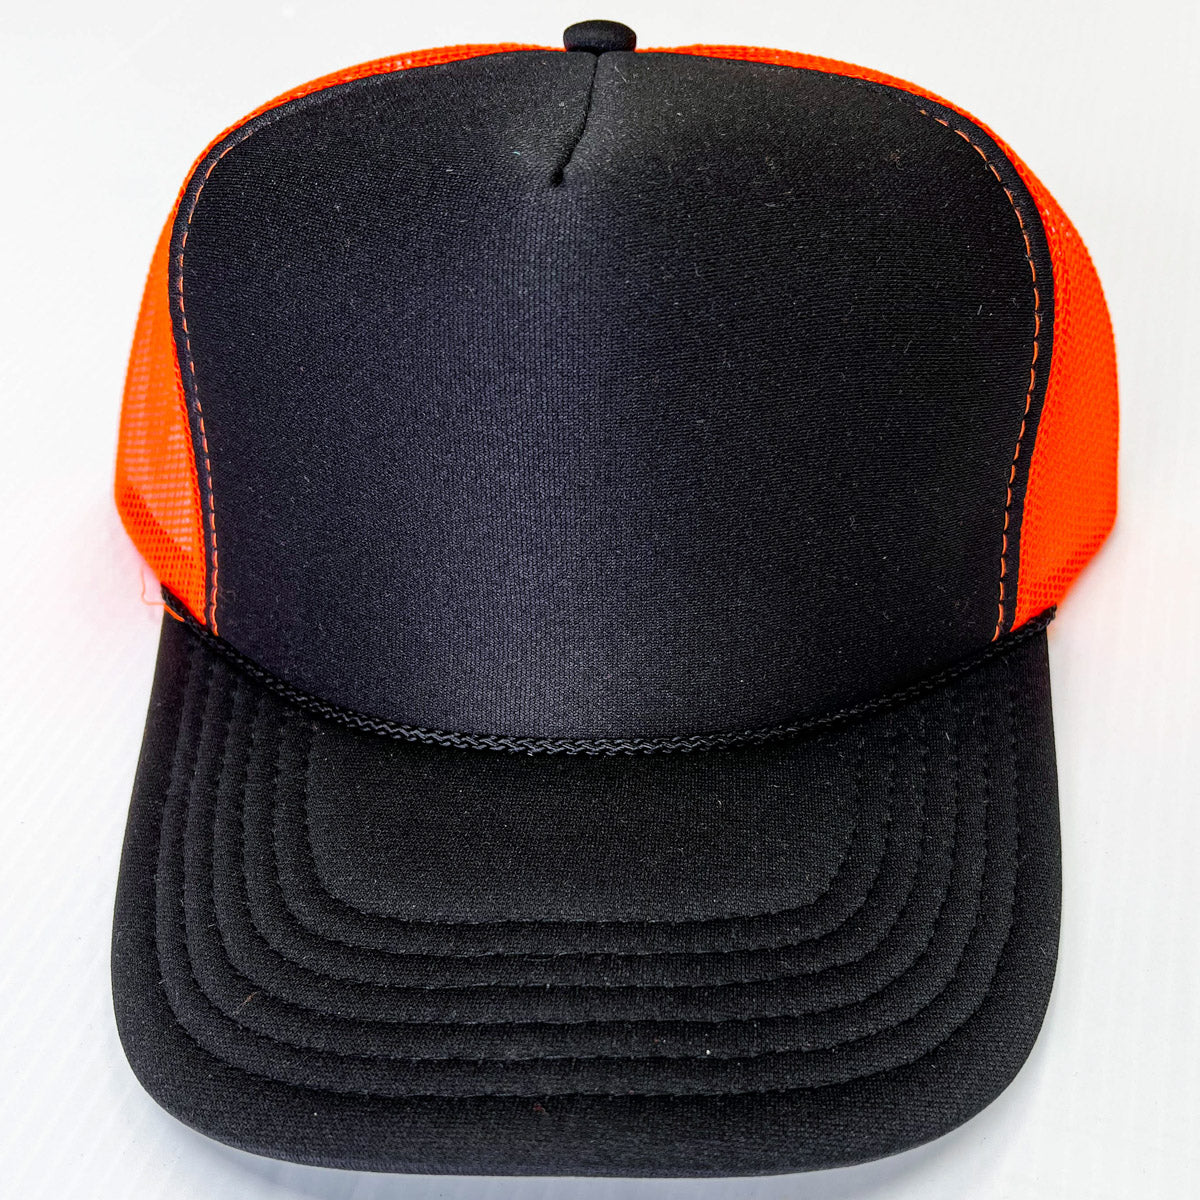 Black cap with Orange